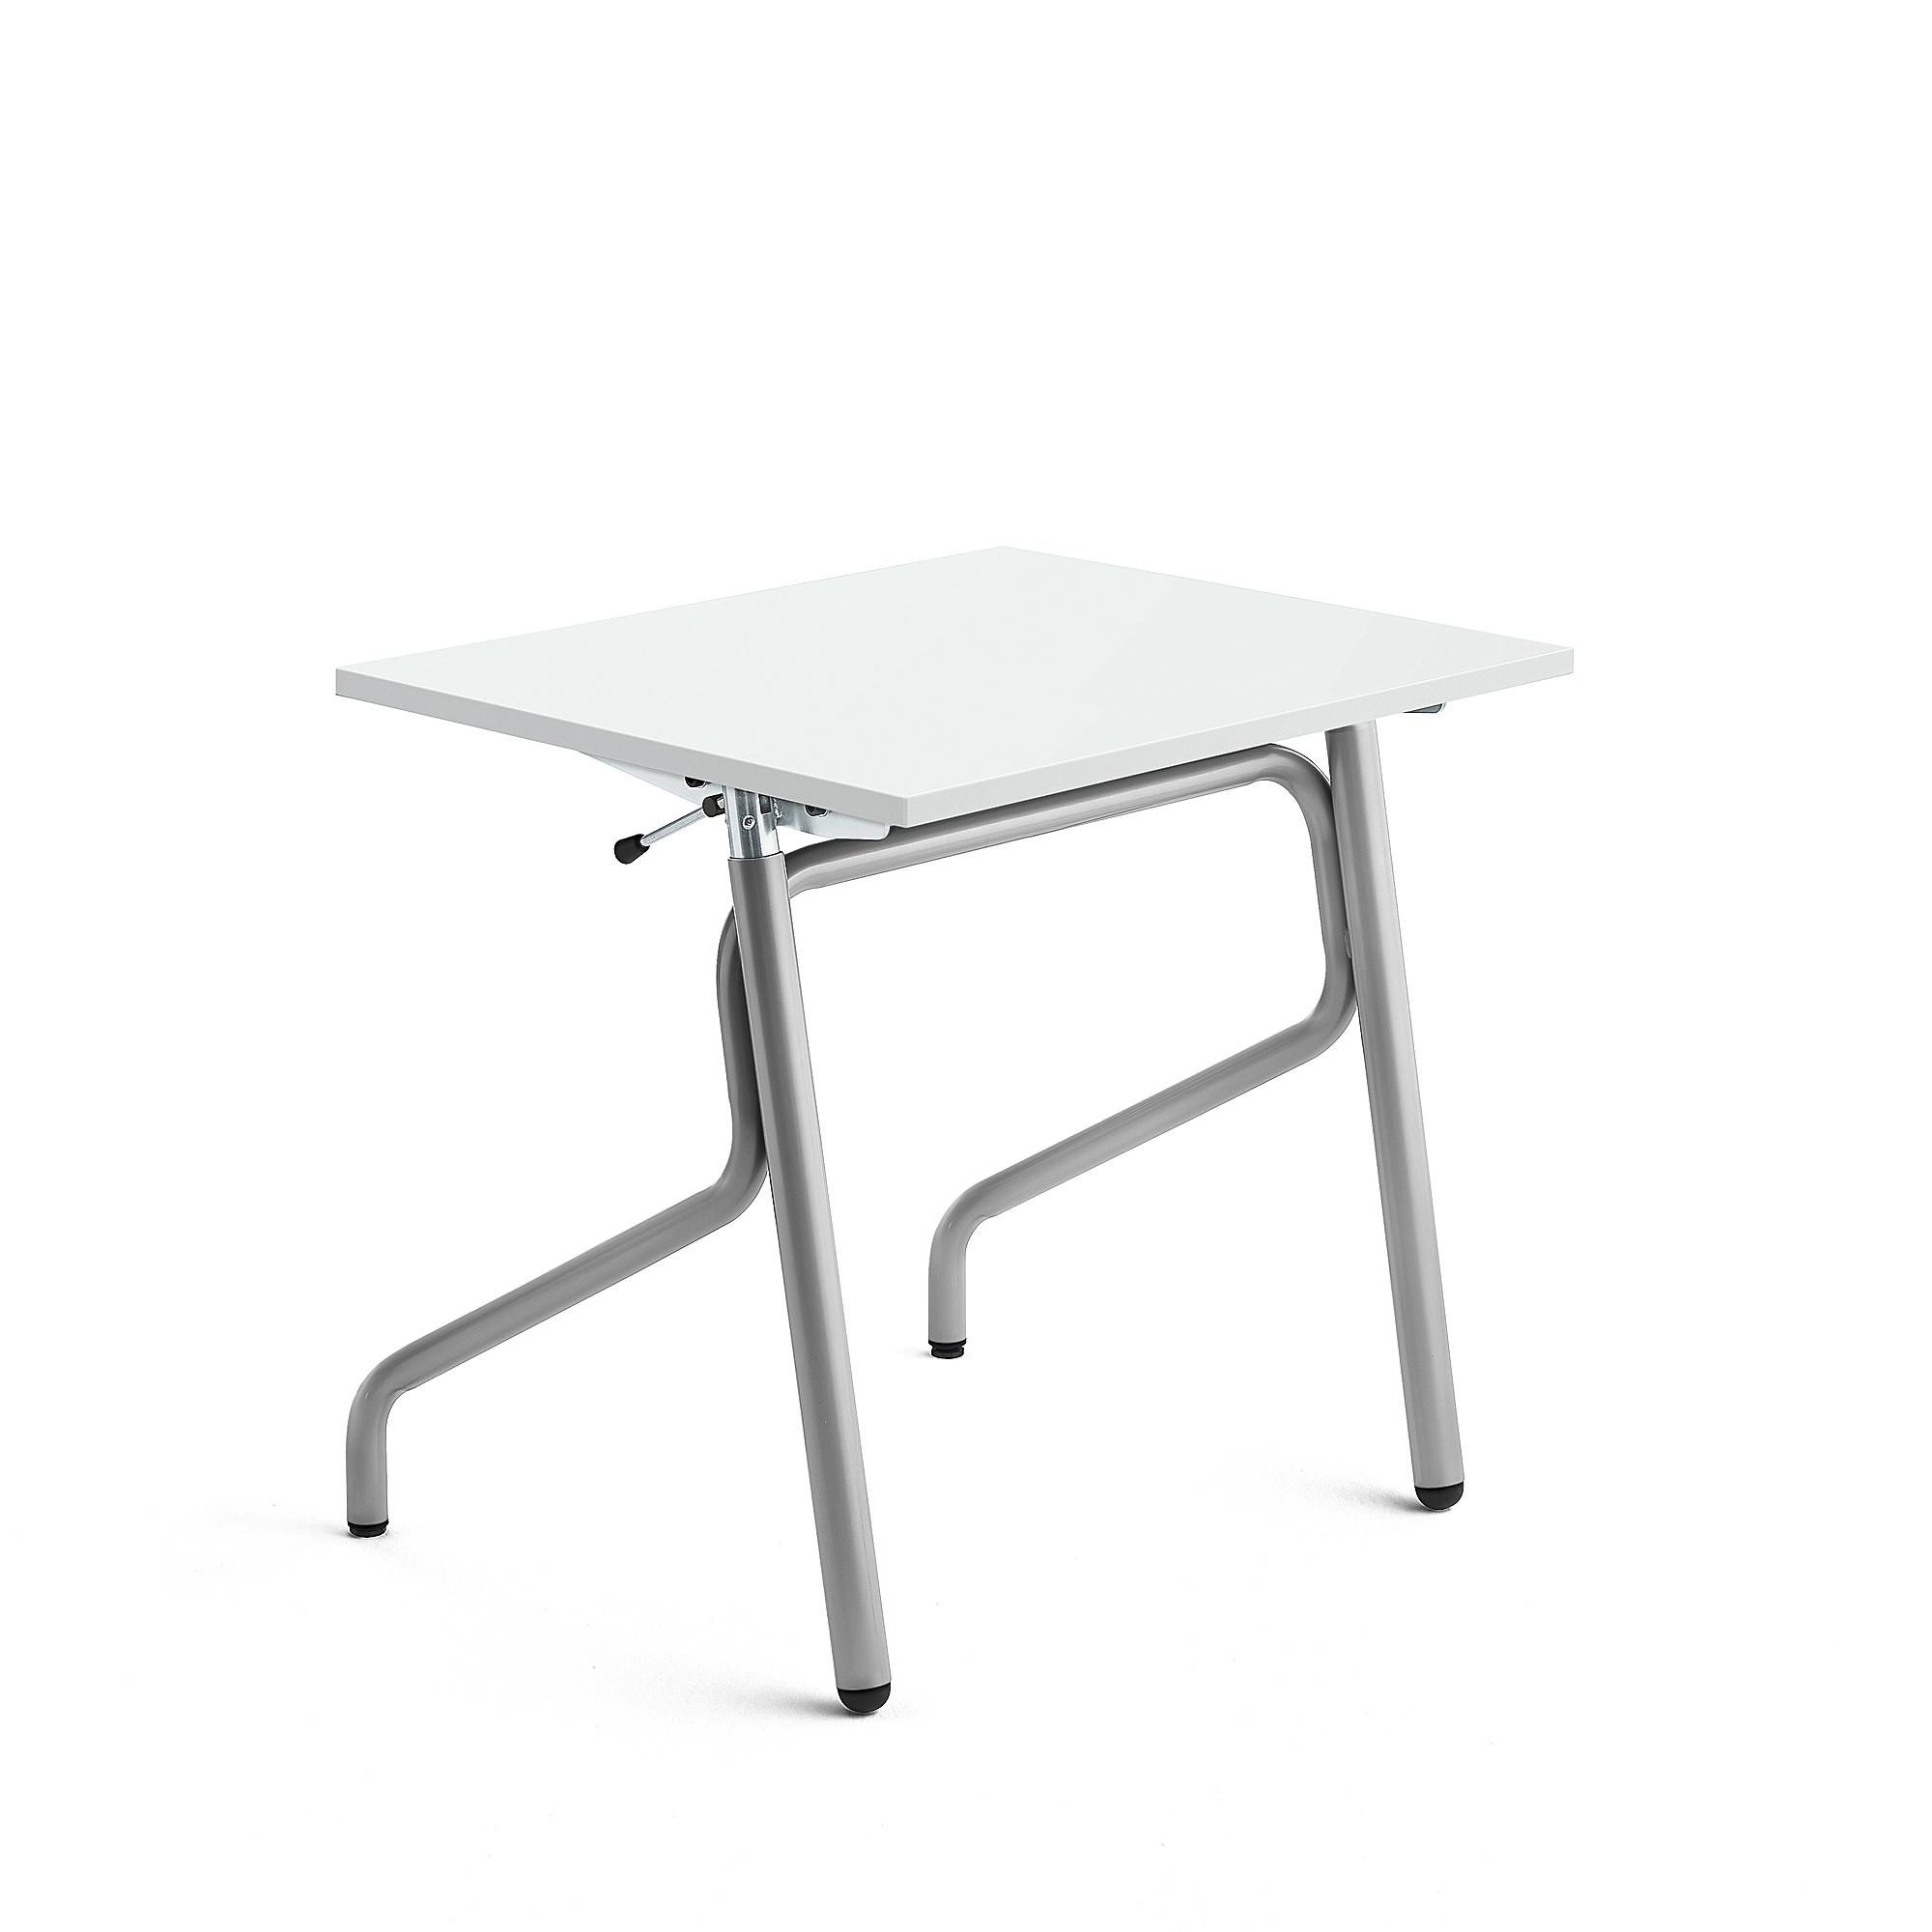 Školní lavice ADJUST, výškově nastavitelná, 700x600 mm, HPL deska tlumící hluk, bílá, stříbrná